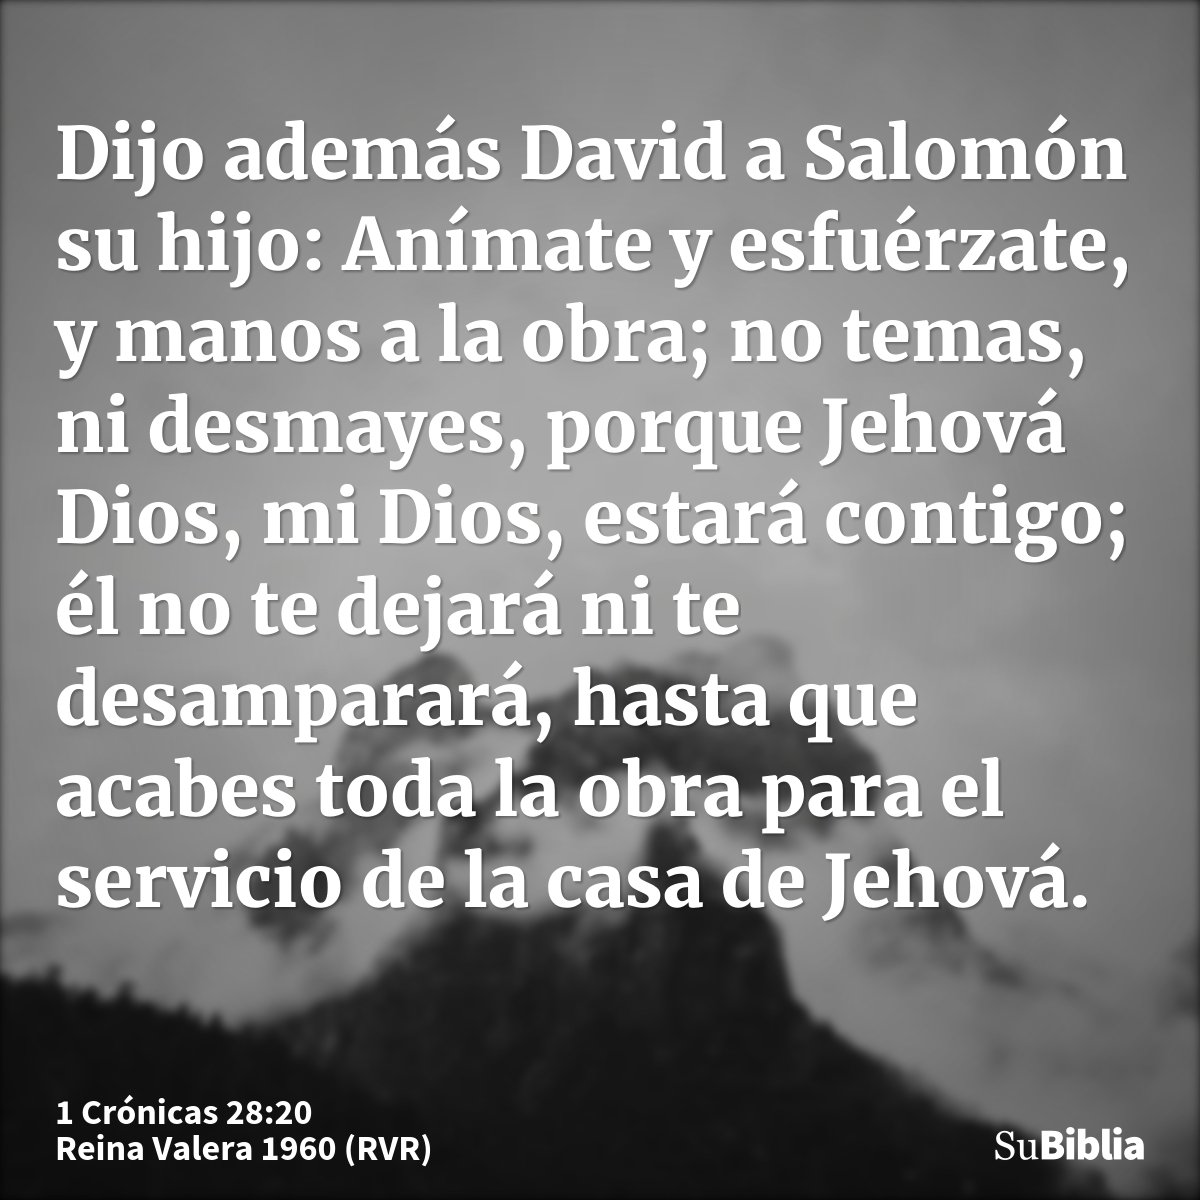 Dijo además David a Salomón su hijo: Anímate y esfuérzate, y manos a la obra; no temas, ni desmayes, porque Jehová Dios, mi Dios, estará contigo; él no te dejar...